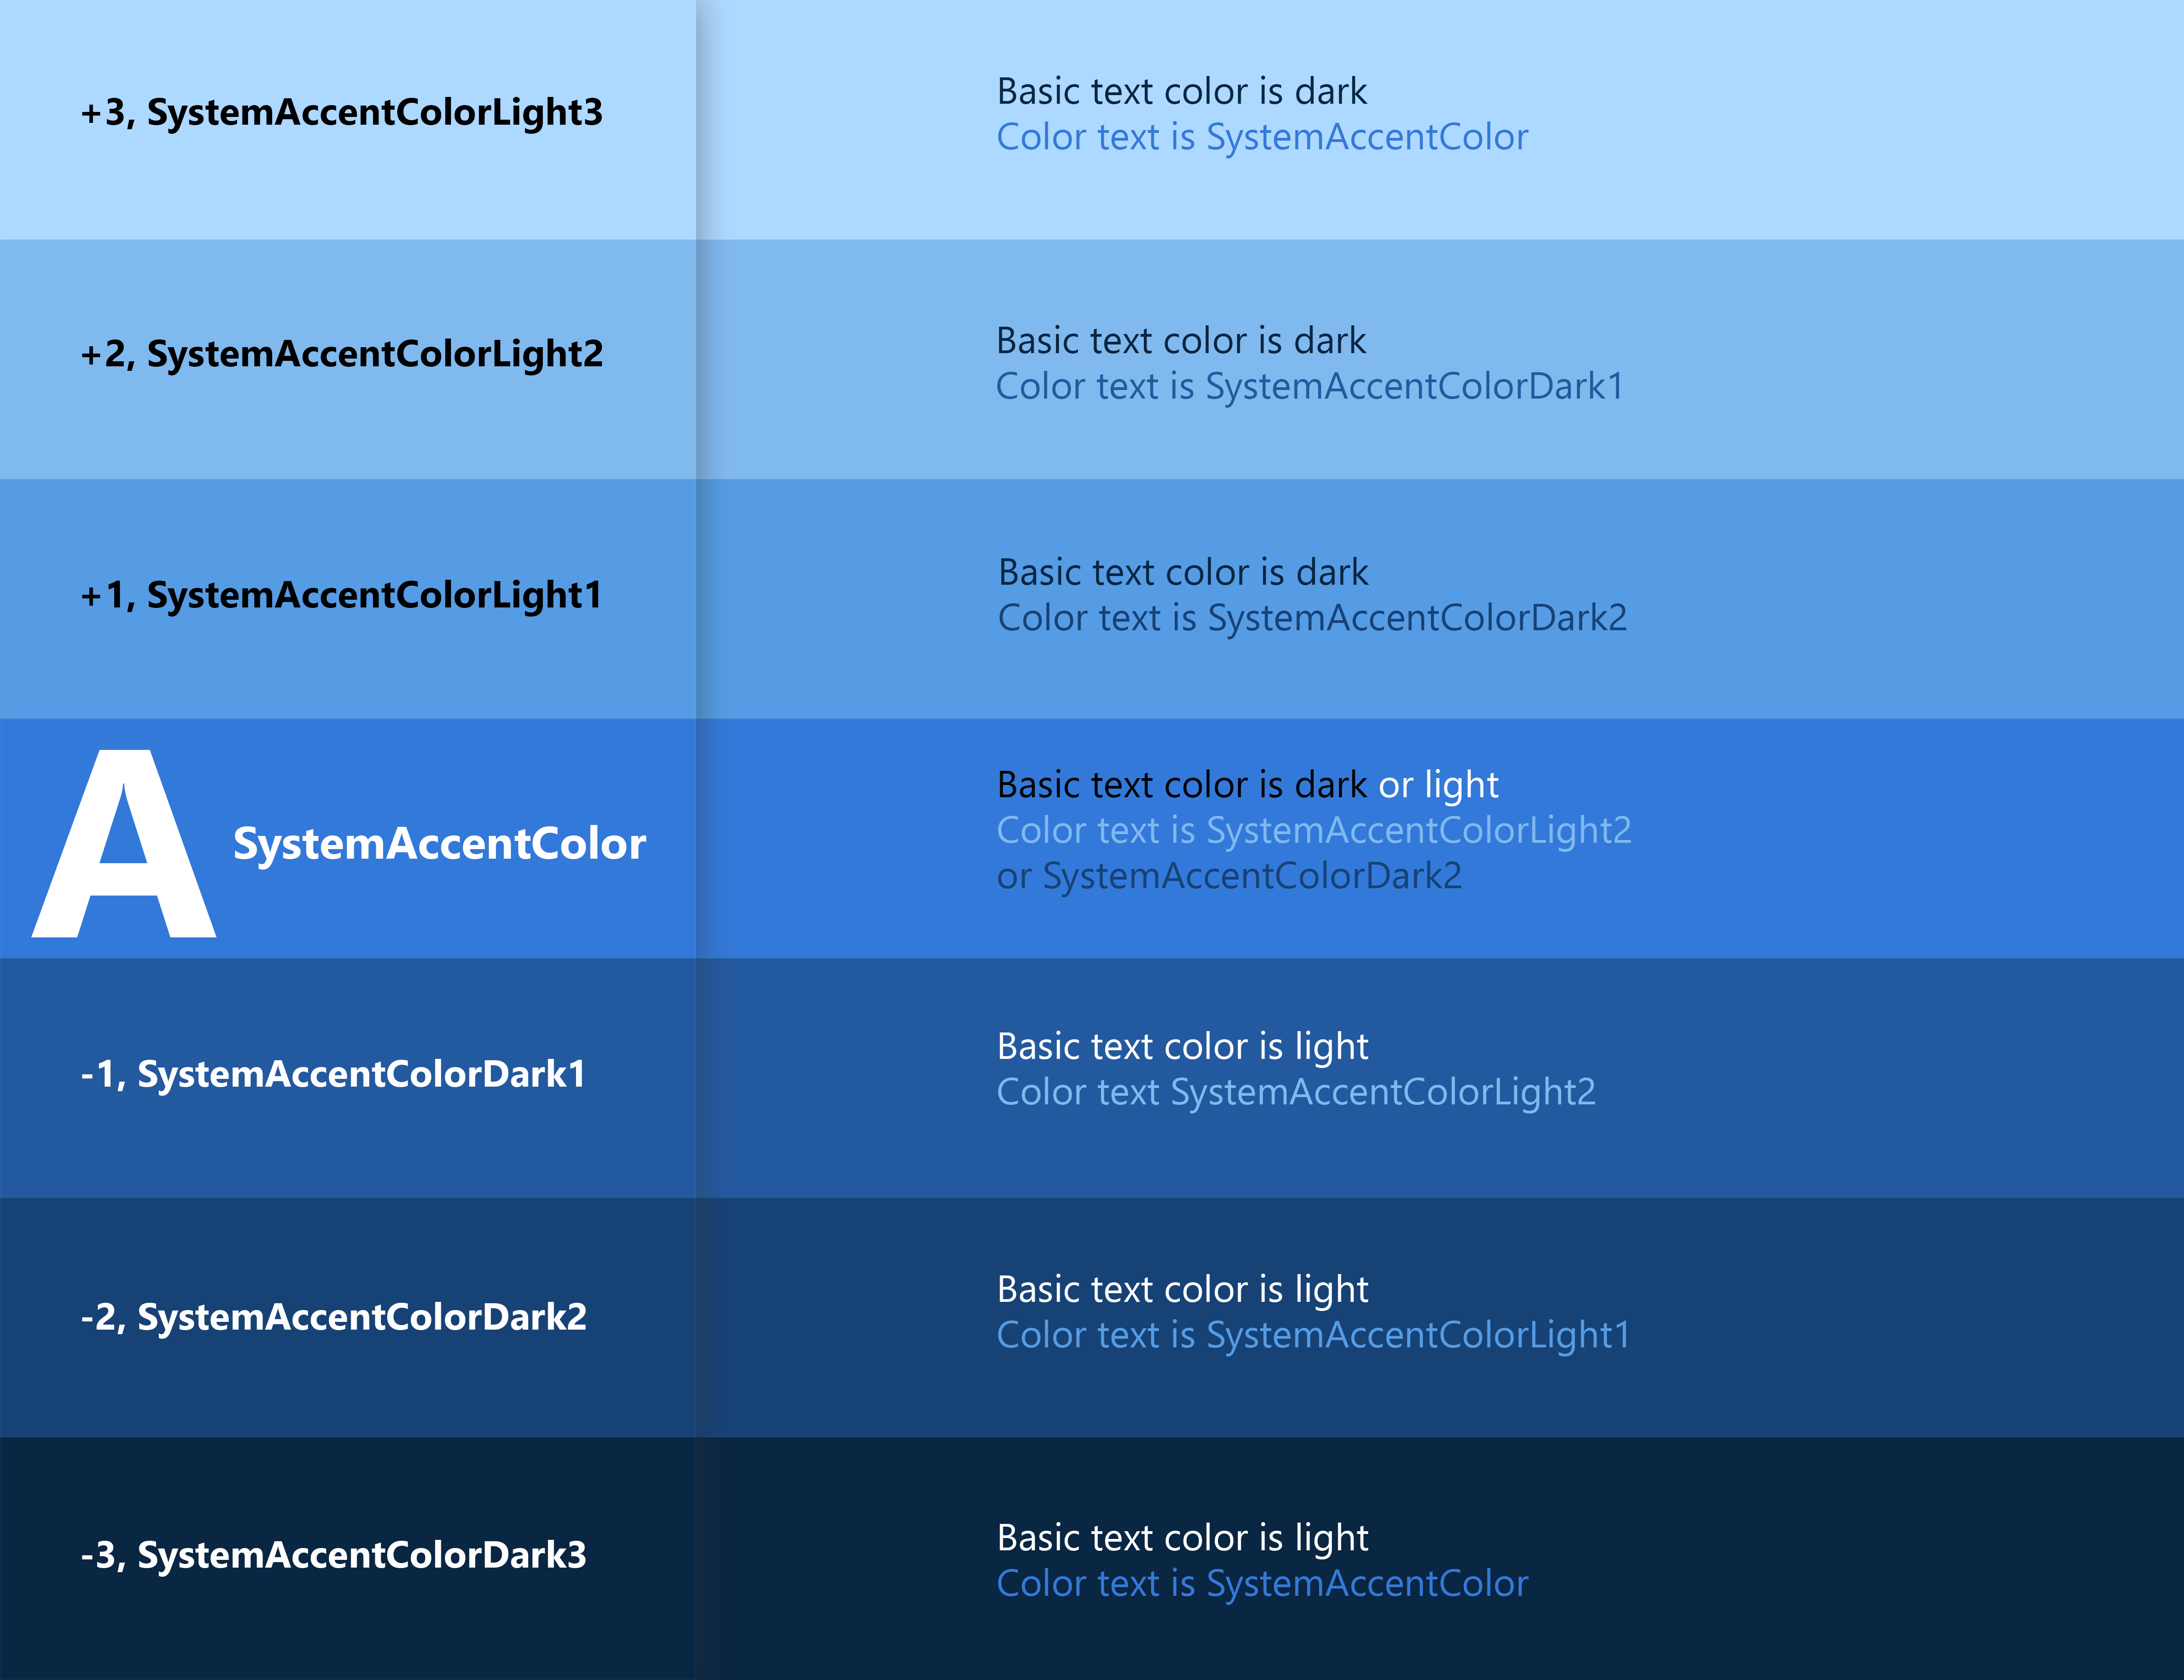 Снимок экрана: схема, на которой отображены цветовые градиенты от светло-синего цвета в верхней части до темно-синего в нижней.